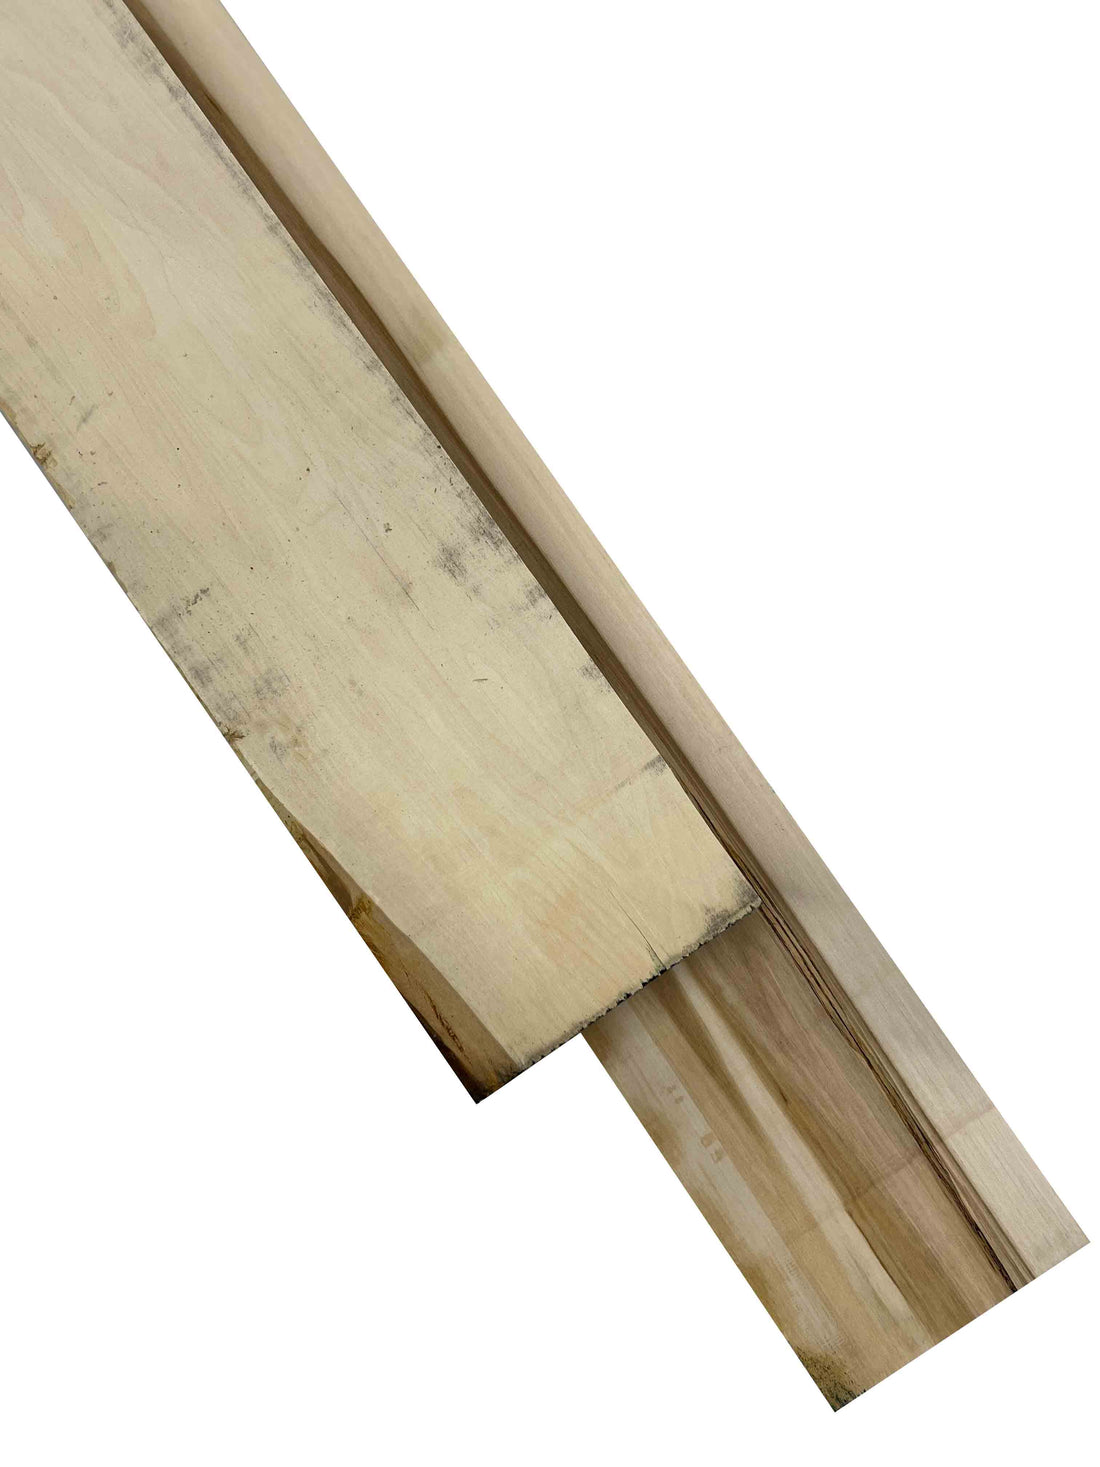 Premium American Hardwood 16/4 Basswood Lumber - Exotic Wood Zone - Buy online Across USA 